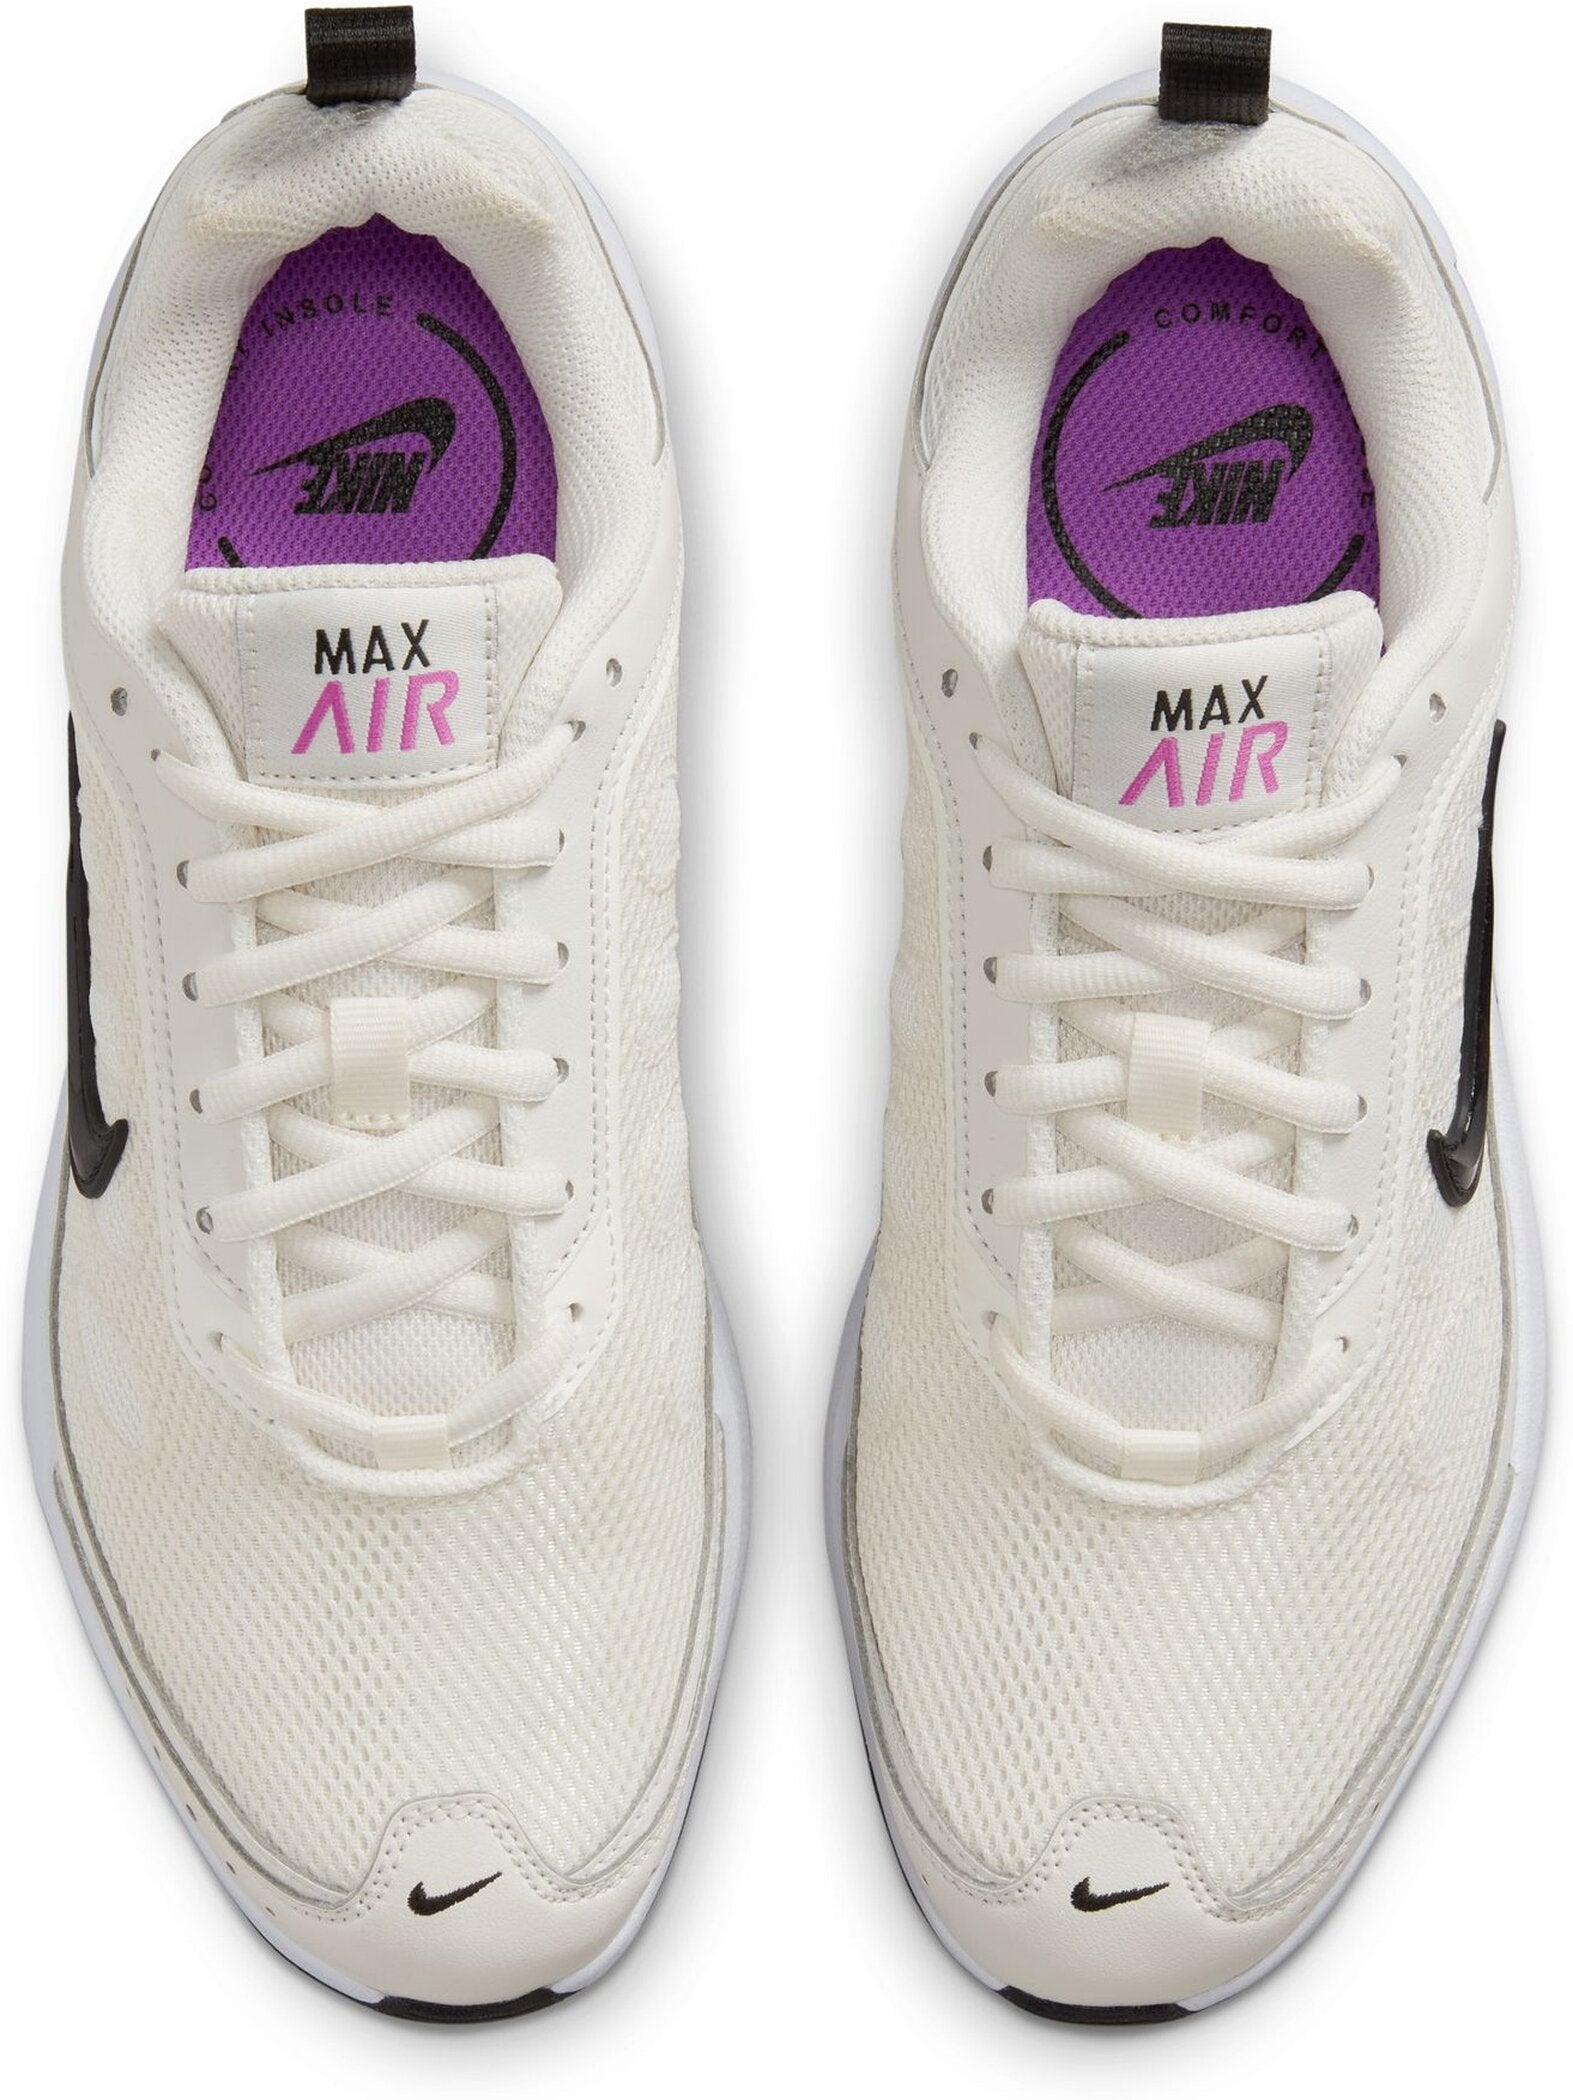 Damen Laufschuhe Air Max AP